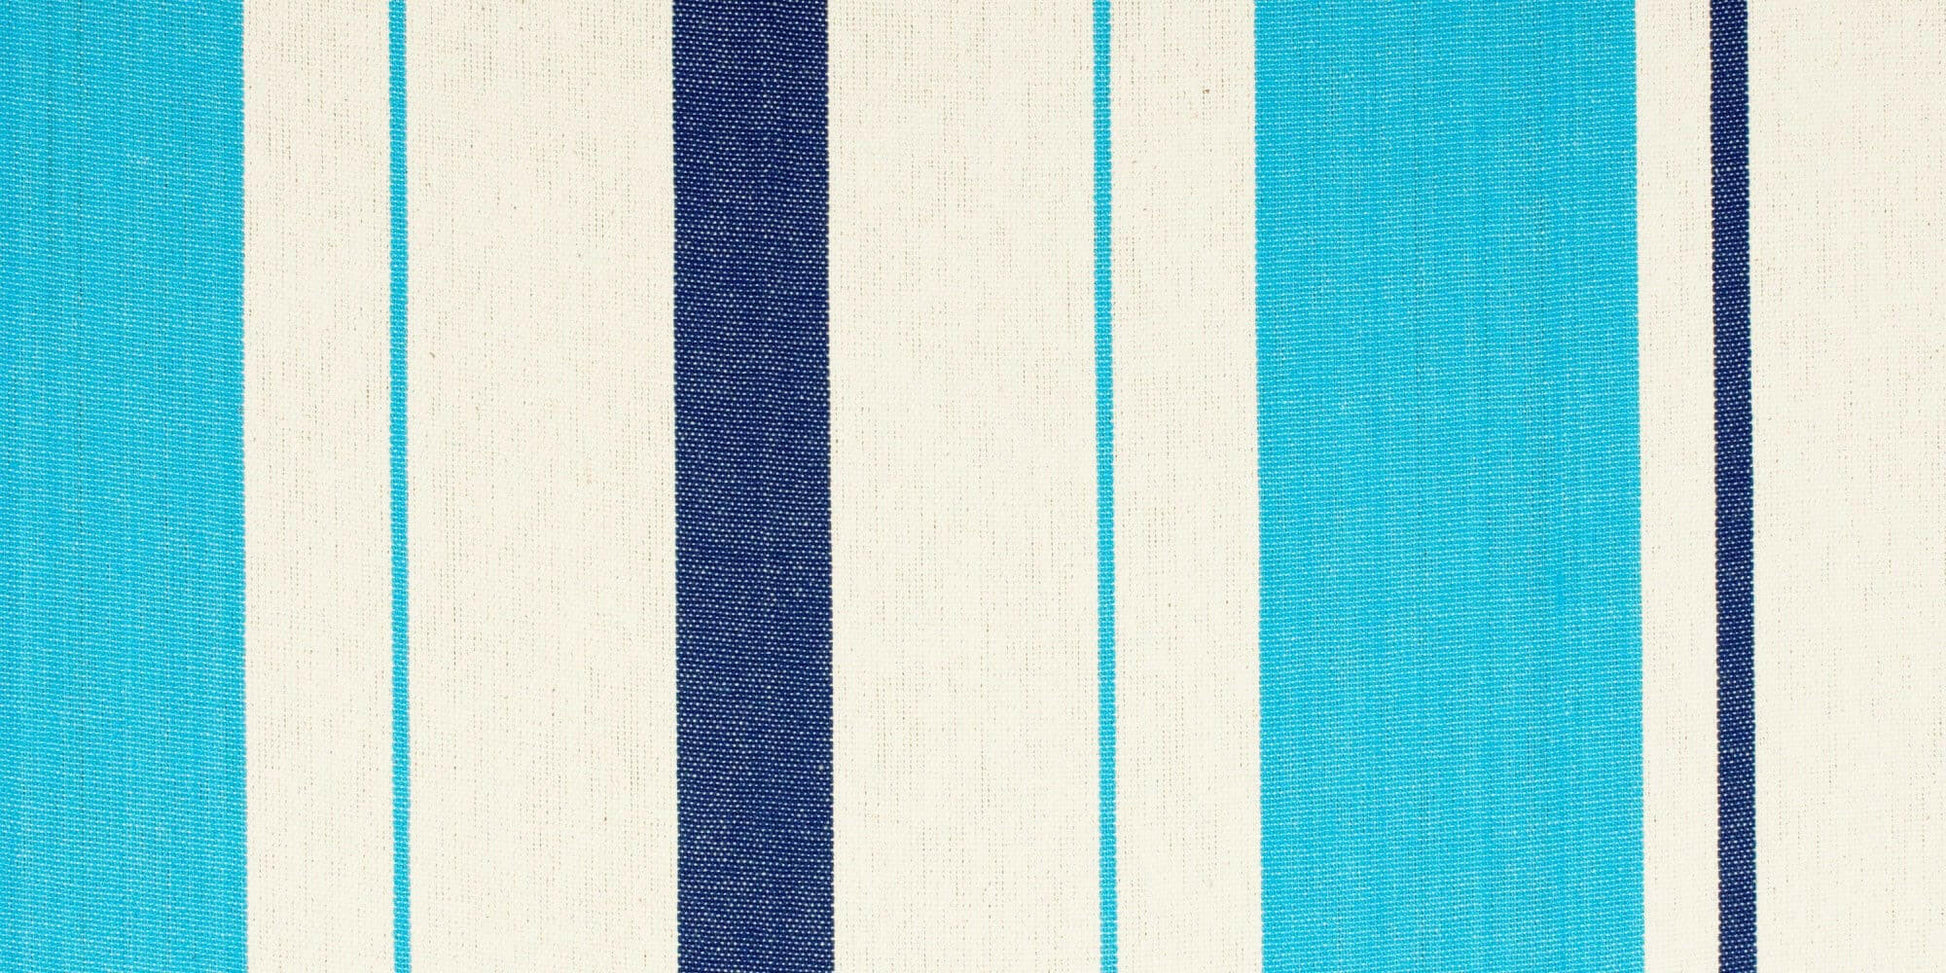 Caribeña Aqua Blue - Klassische Einzel-Hängematte aus Baumwolle - lasiestaeu